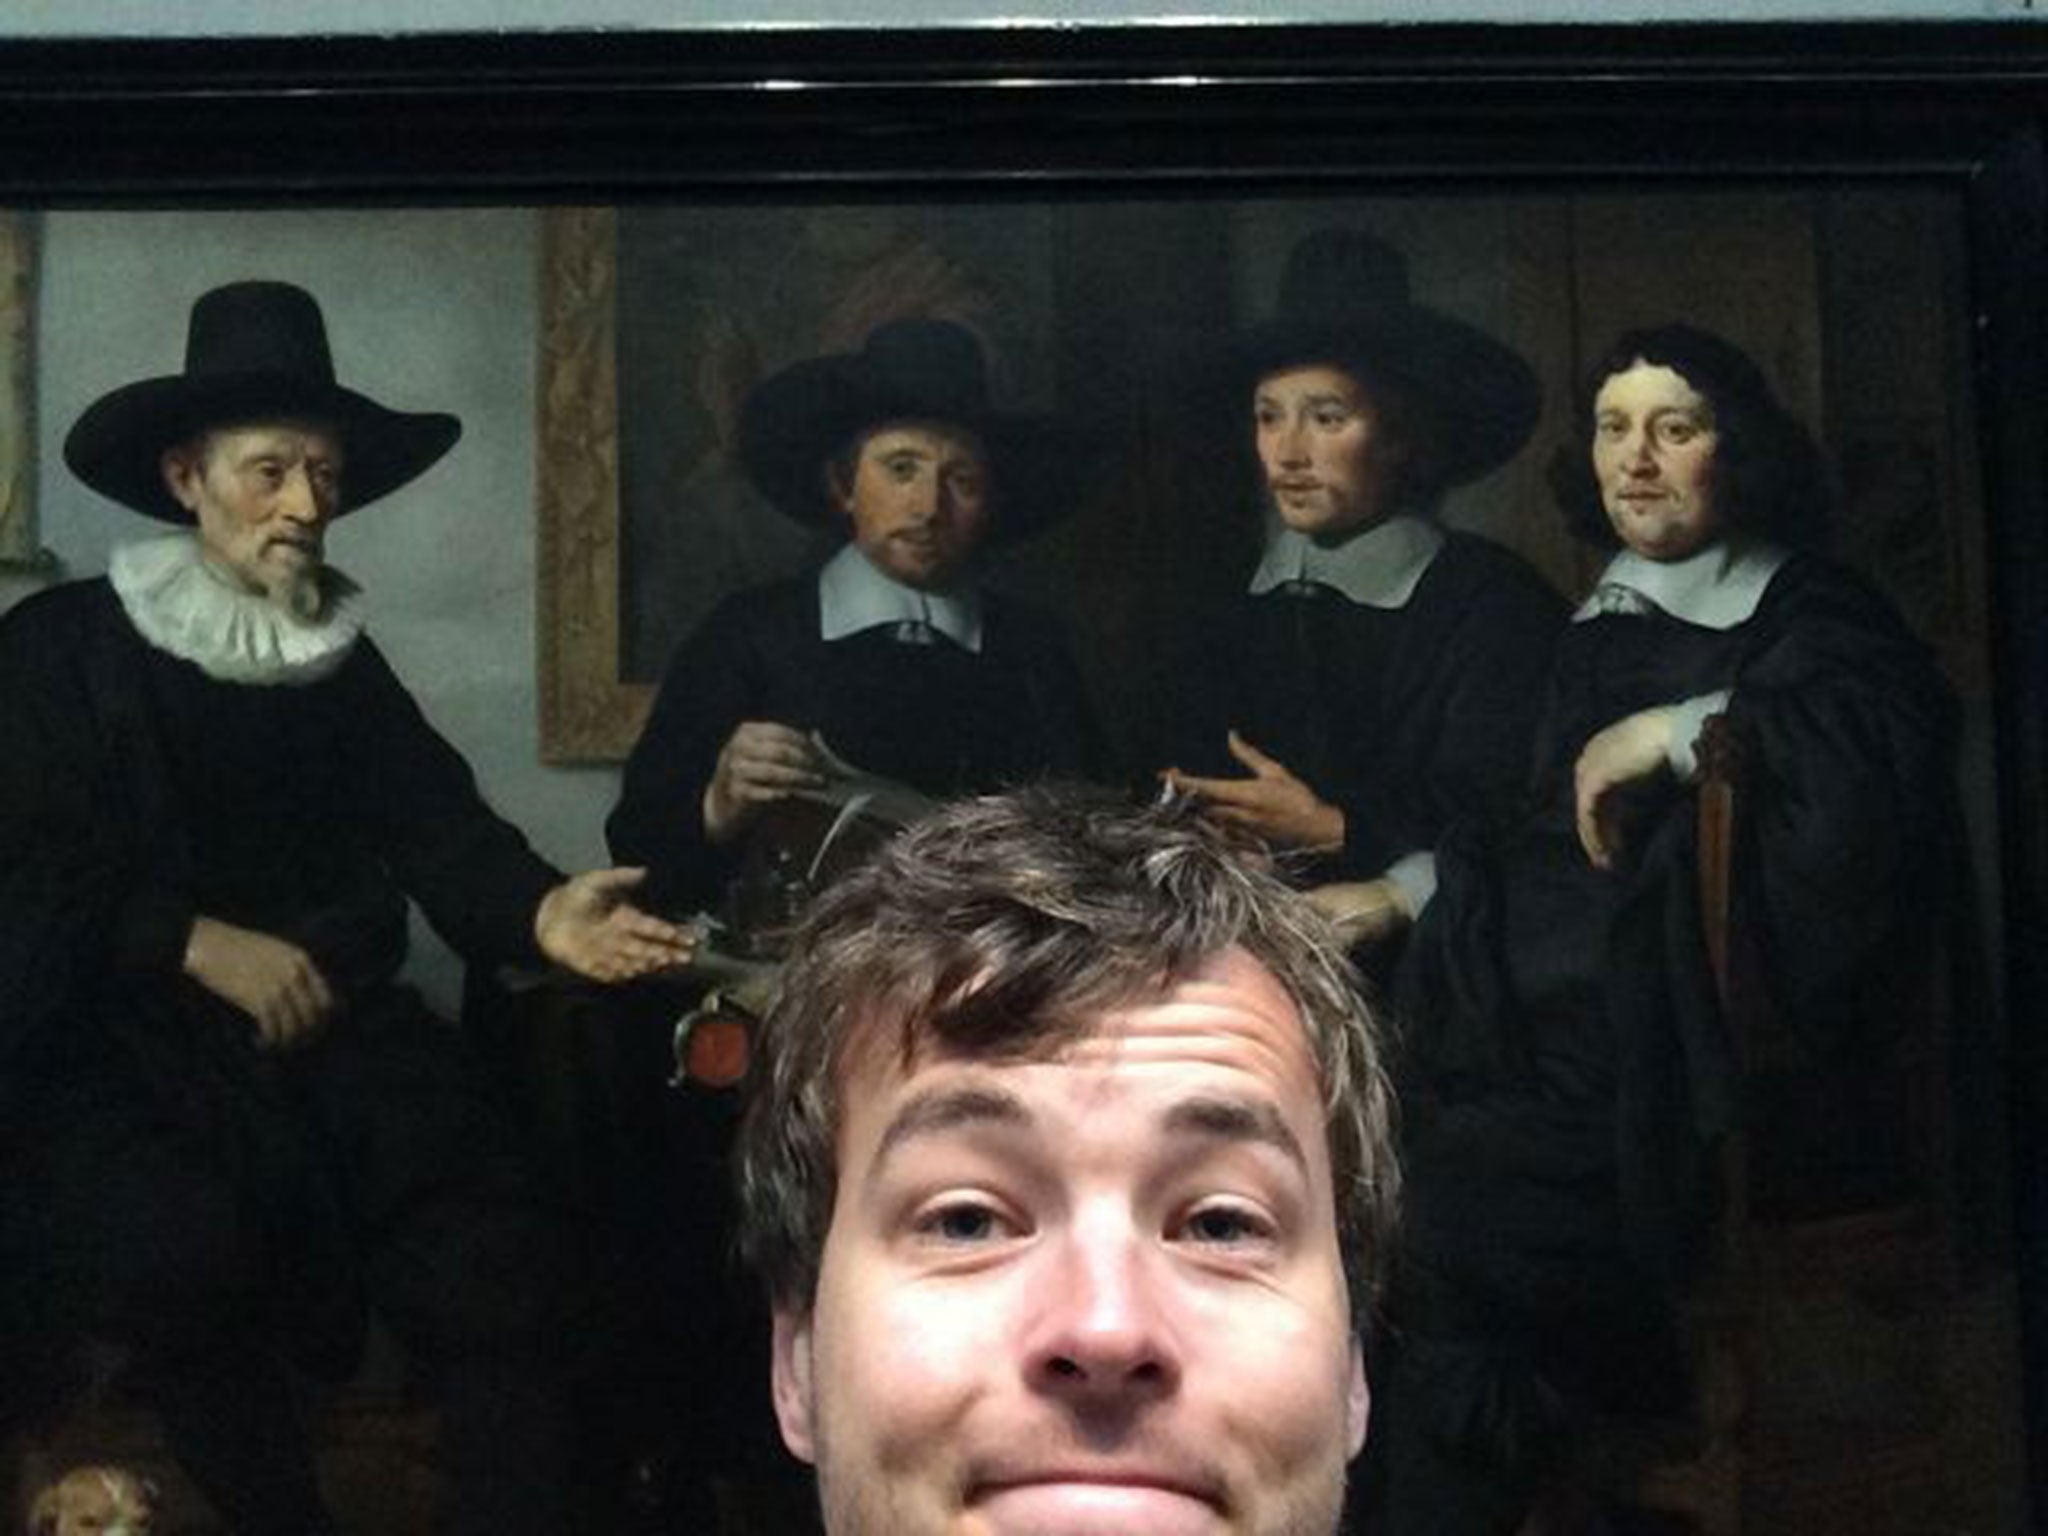 And here's me with Gerbrand van den Eeckhout’s 1657 group portrait...